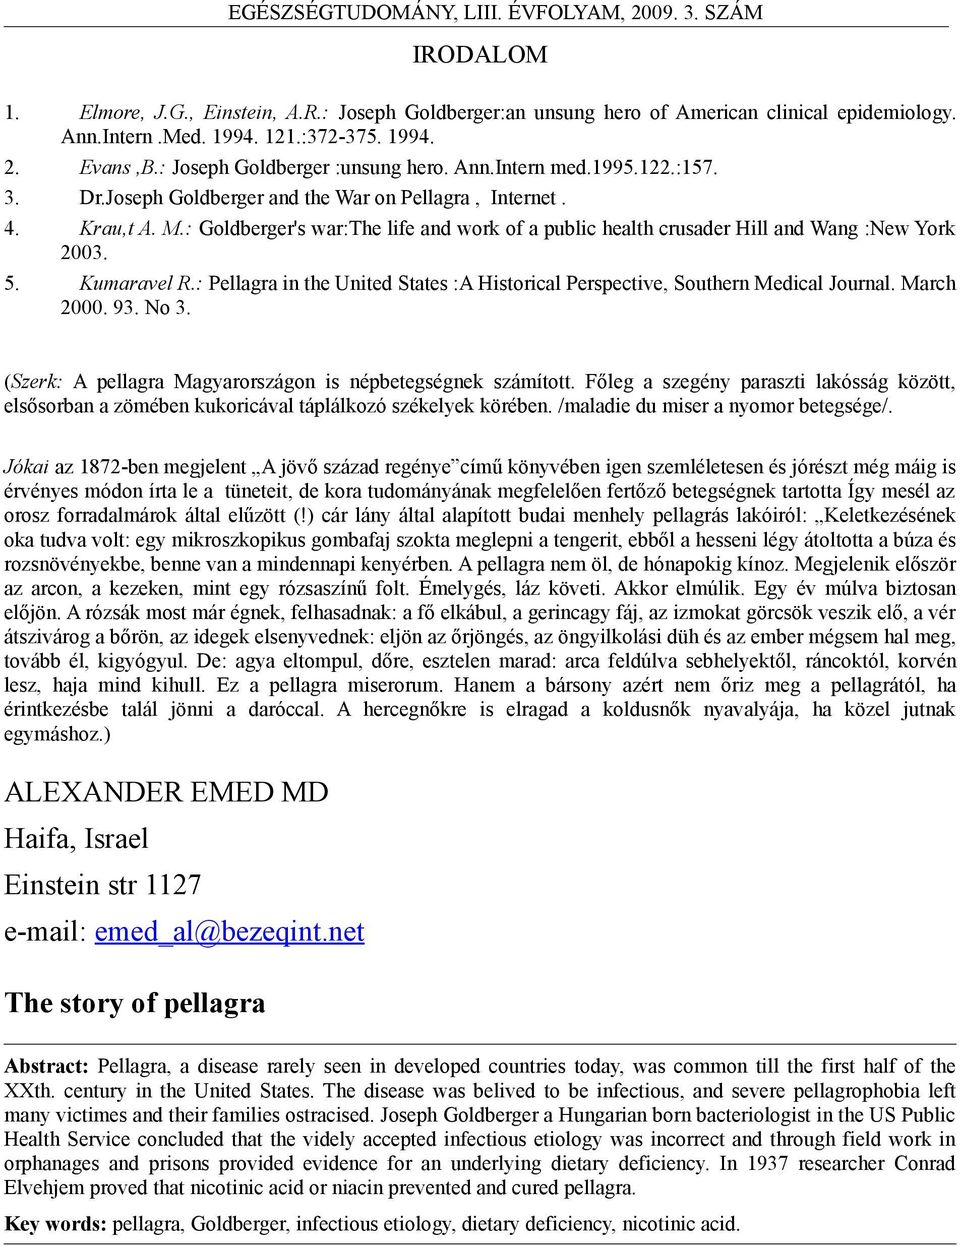 5. Kumaravel R.: Pellagra in the United States :A Historical Perspective, Southern Medical Journal. March 2000. 93. No 3. (Szerk: A pellagra Magyarországon is népbetegségnek számított.